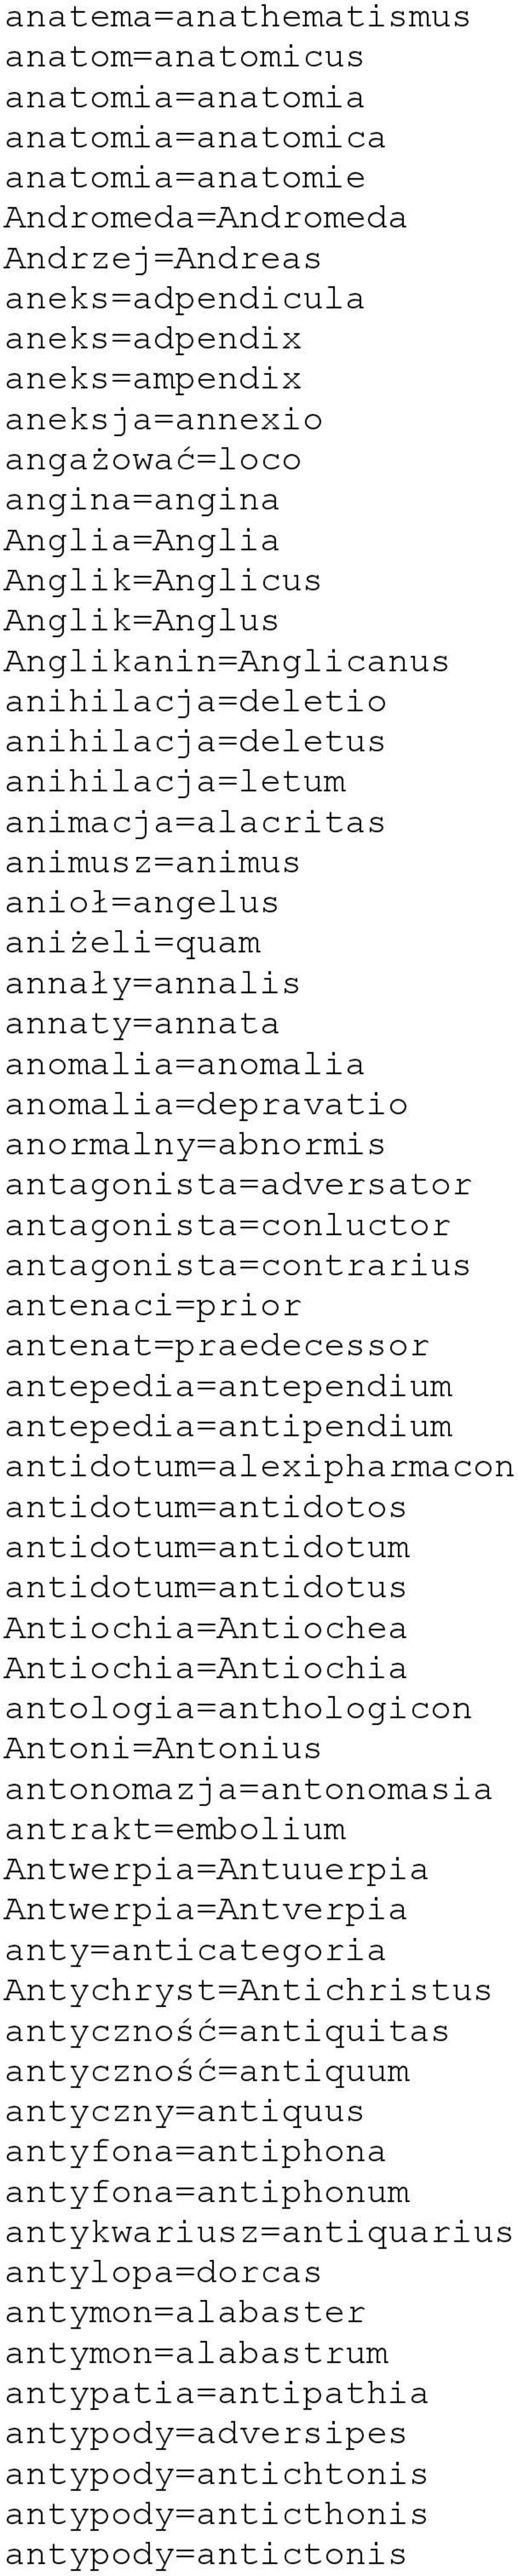 aniżeli=quam annały=annalis annaty=annata anomalia=anomalia anomalia=depravatio anormalny=abnormis antagonista=adversator antagonista=conluctor antagonista=contrarius antenaci=prior